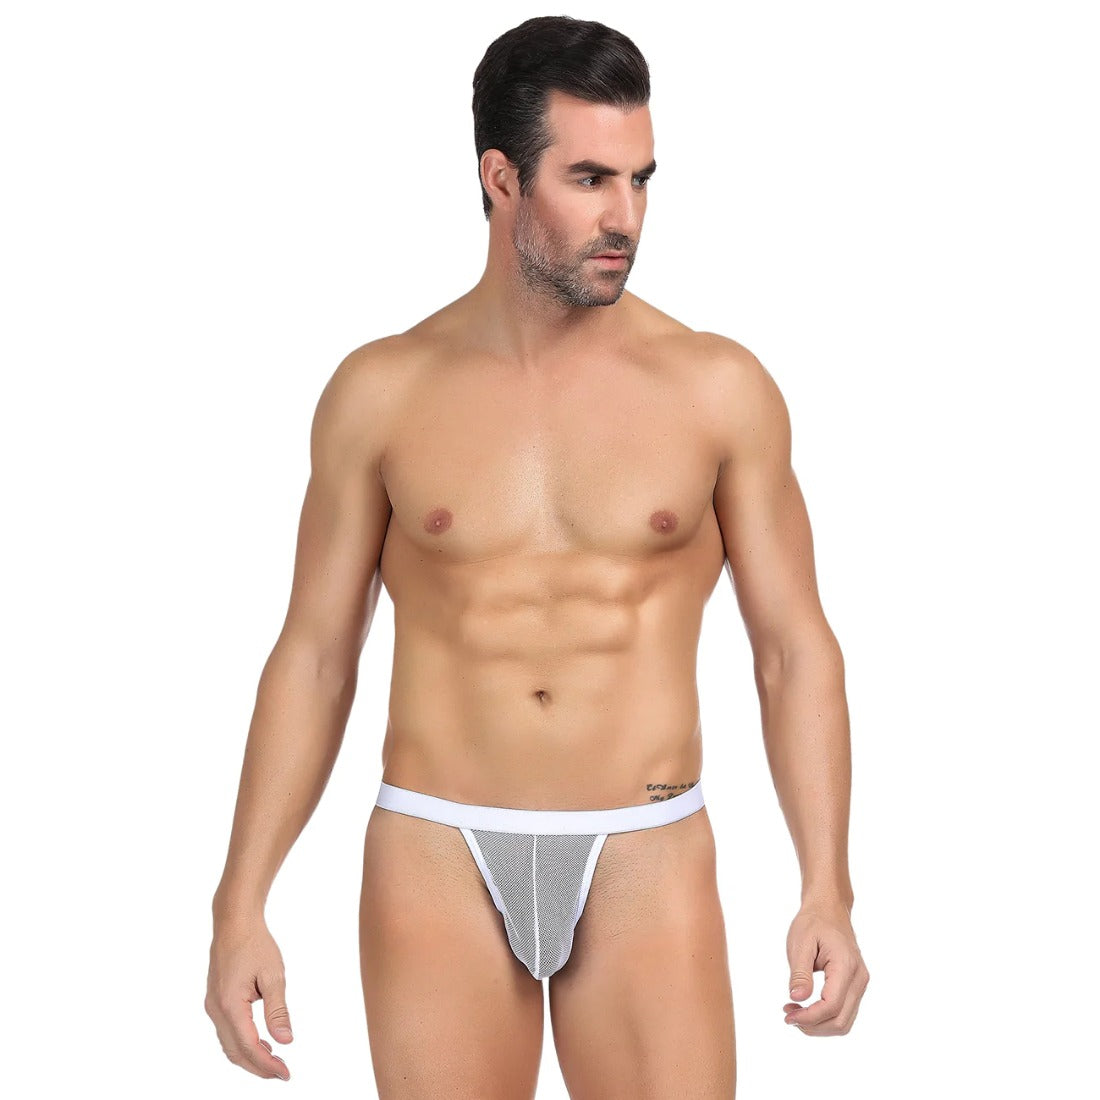 Men's Mesh Power Net Transparent Sexy Brief Underwear (White) - GillKart